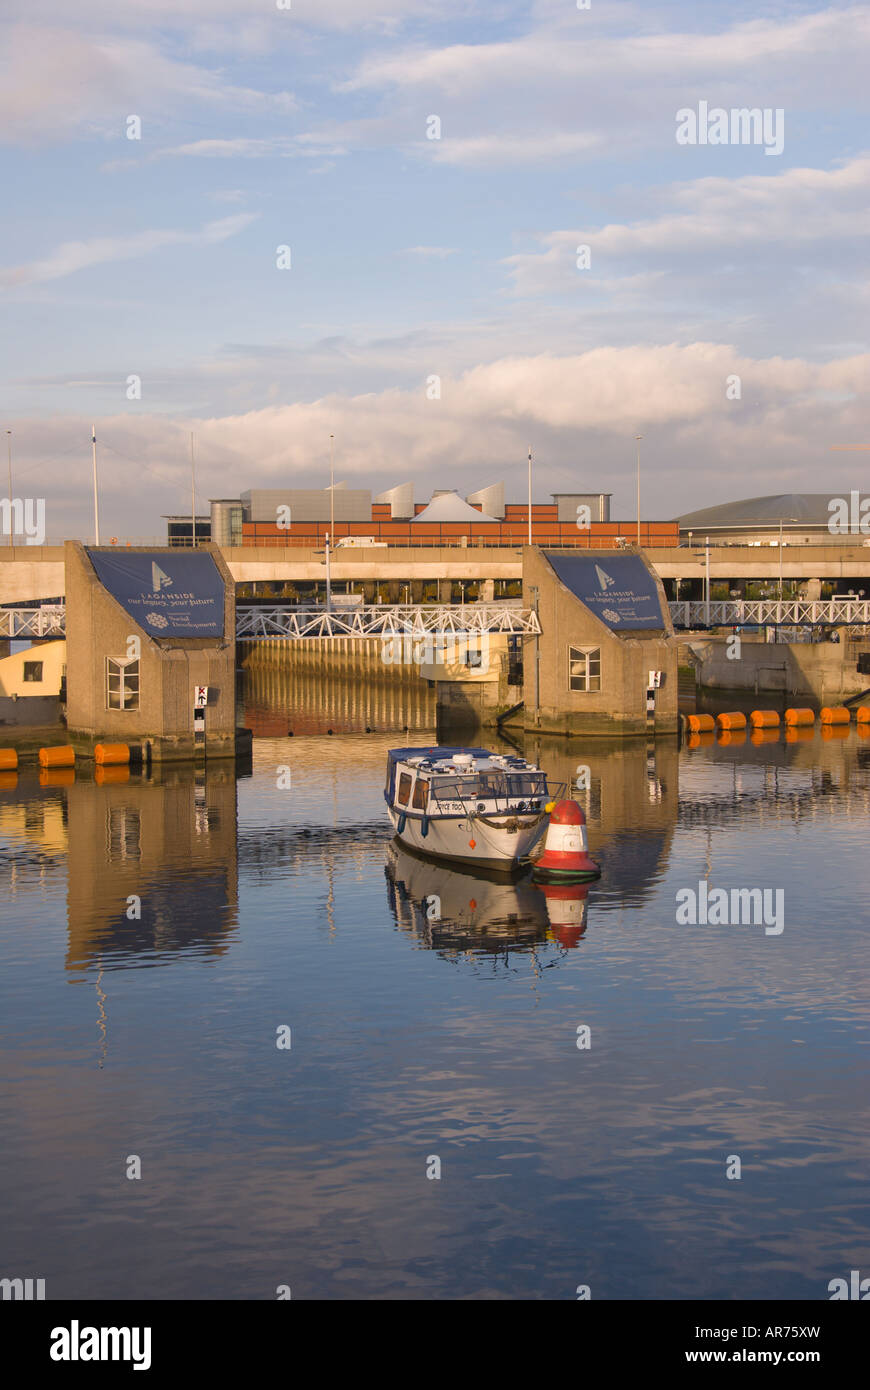 Lagan Weir Fluss Lagan Belfast n Nordirland Wasserstand Steuerung System Orange Tourenboot schwimmt Stockfoto